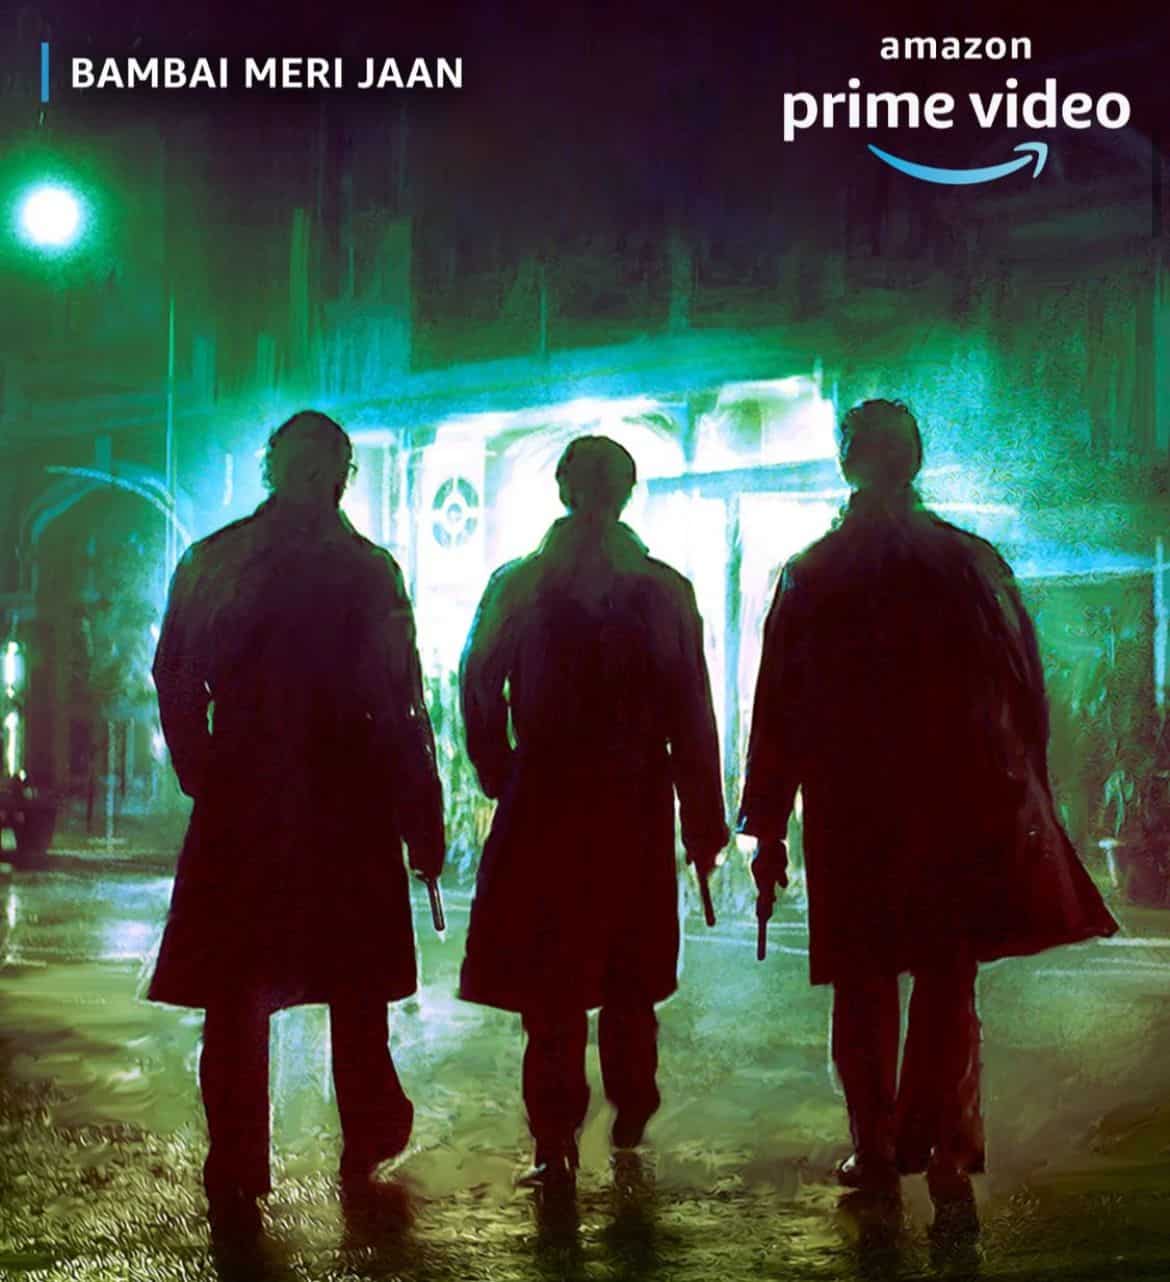 2. Bombay Meri Jaan (Hindi)